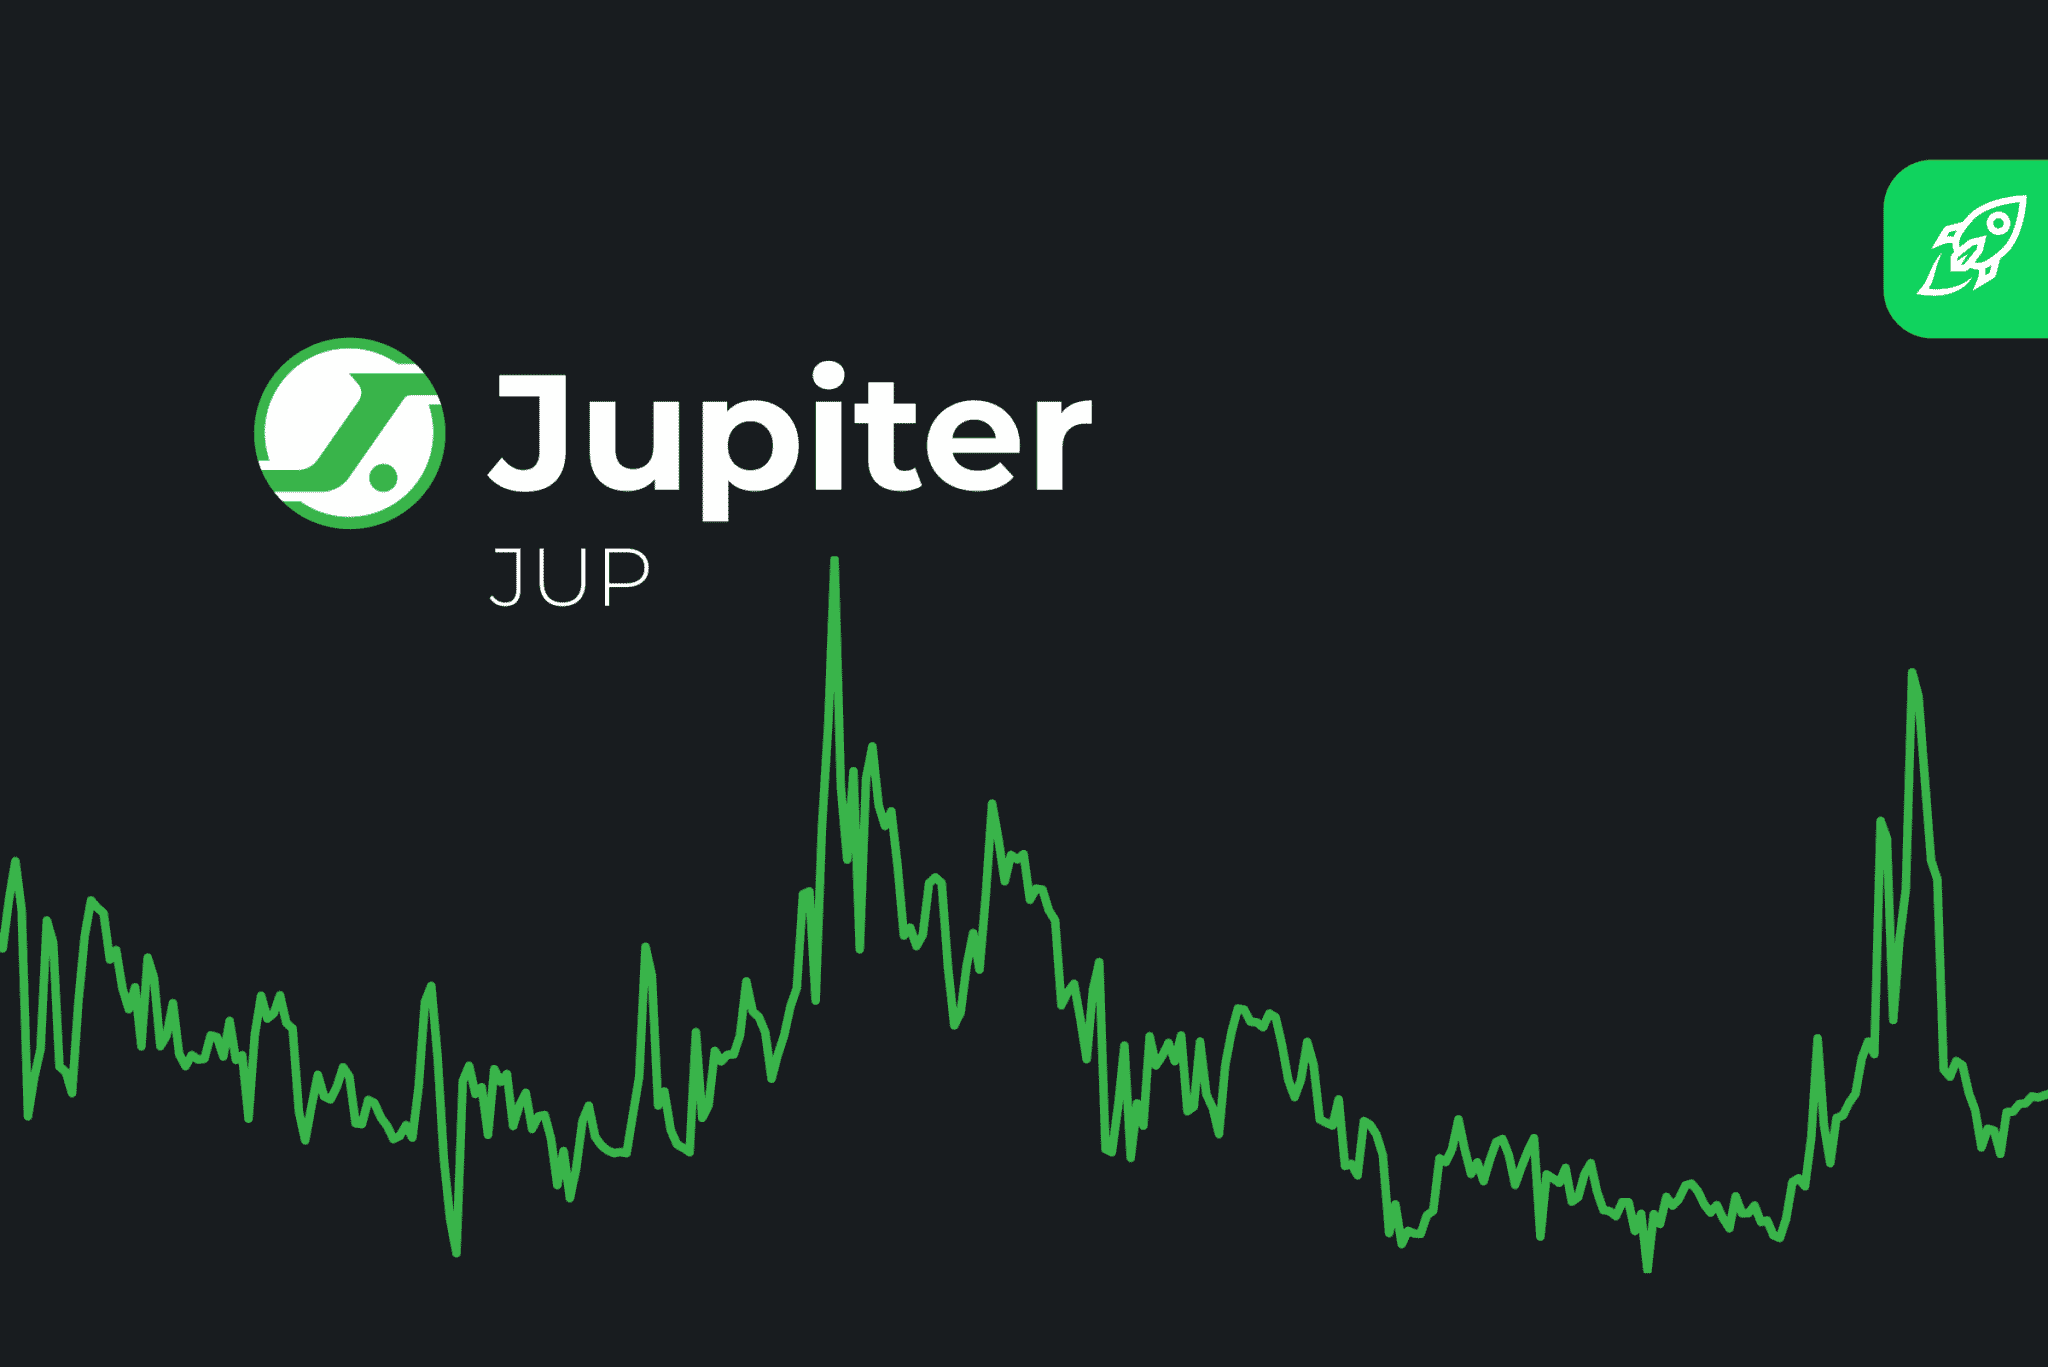 jupiter crypto price prediction 2030